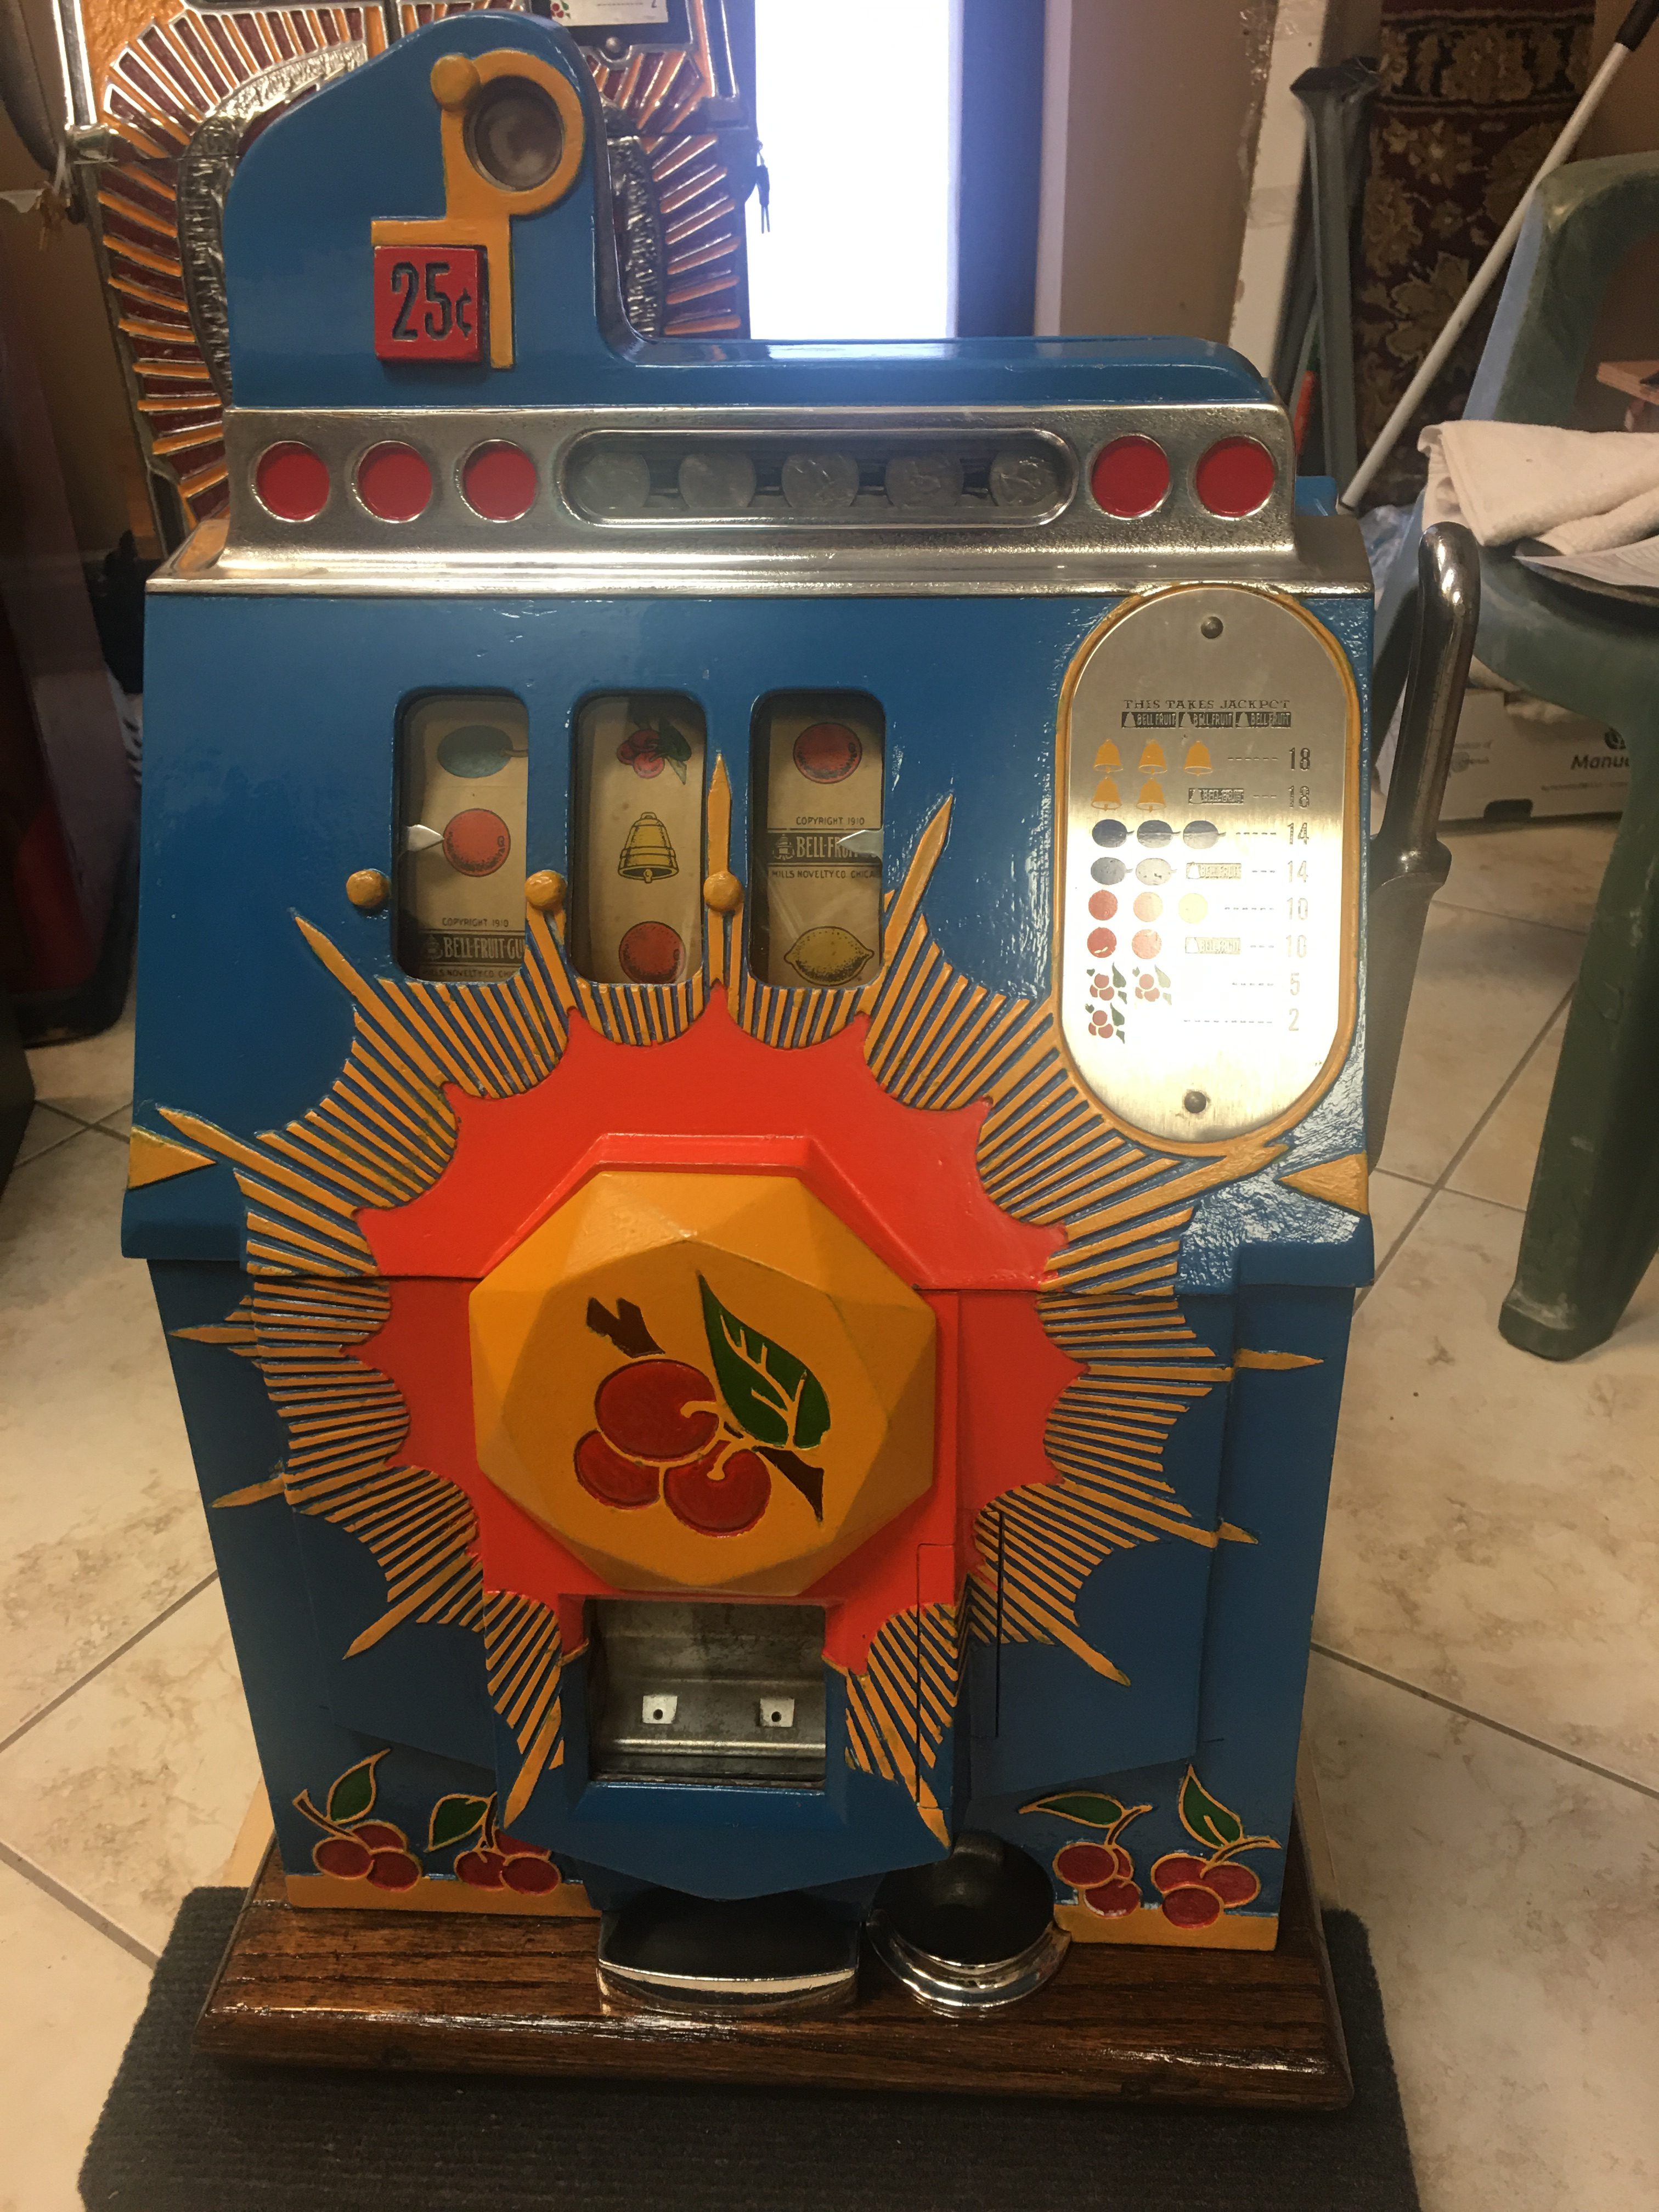 Mills Bursting Cherry Slot Machine